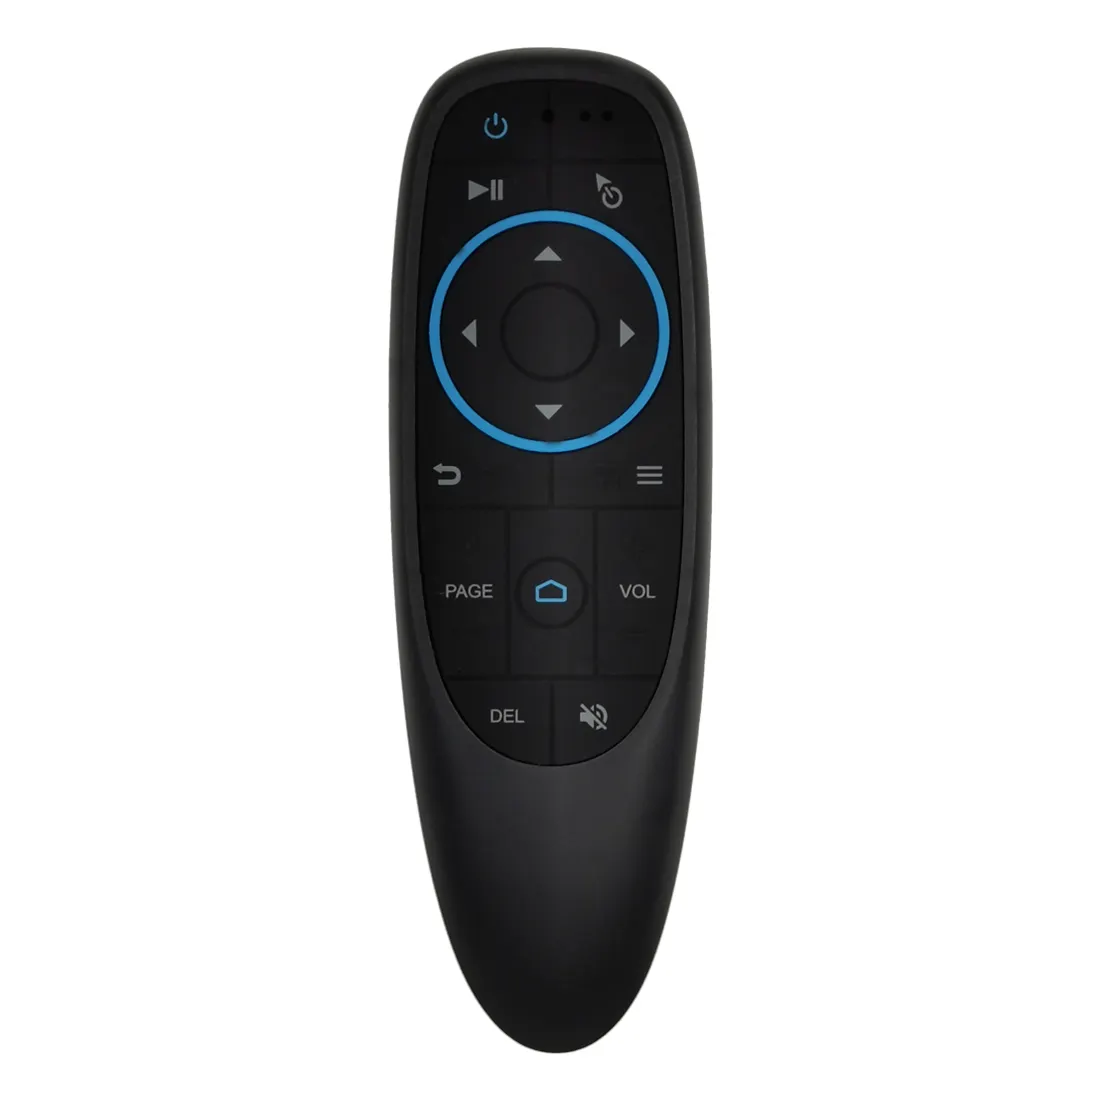 G10bts bt5.0 air mouse com gyroscope, controle remoto universal, sensor de aprendizagem de ir para smart tv, pc, set-top box g10bt